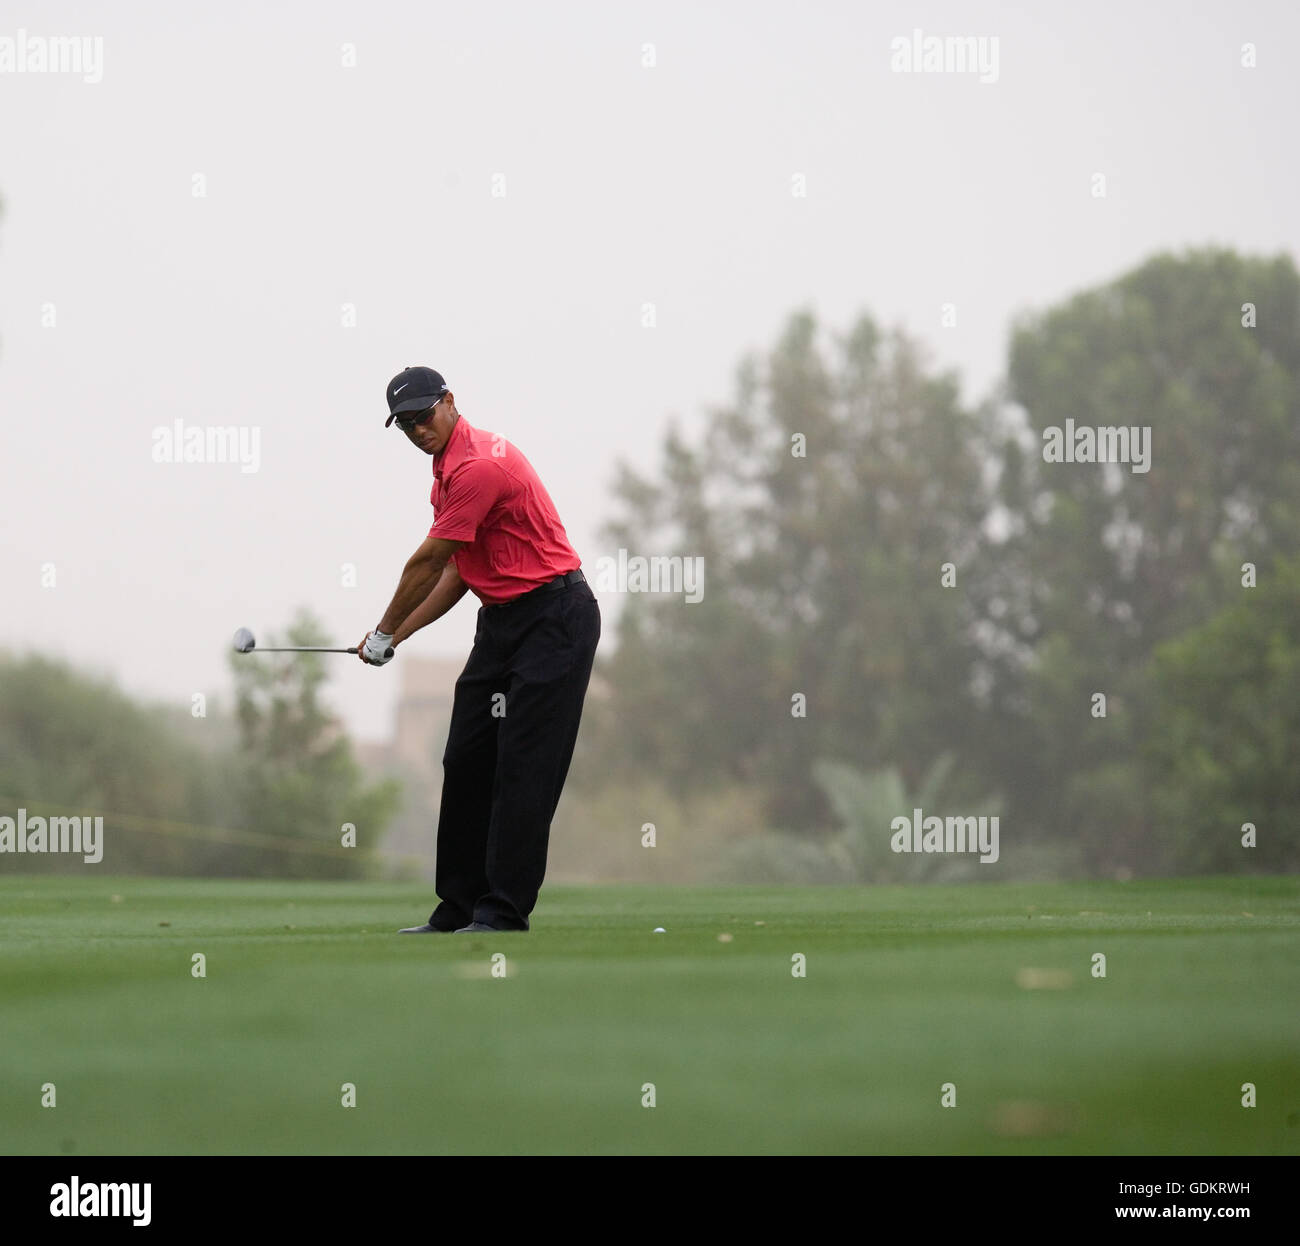 Tiger Woods prend un shot, DUBAÏ, ÉMIRATS ARABES UNIS. Banque D'Images